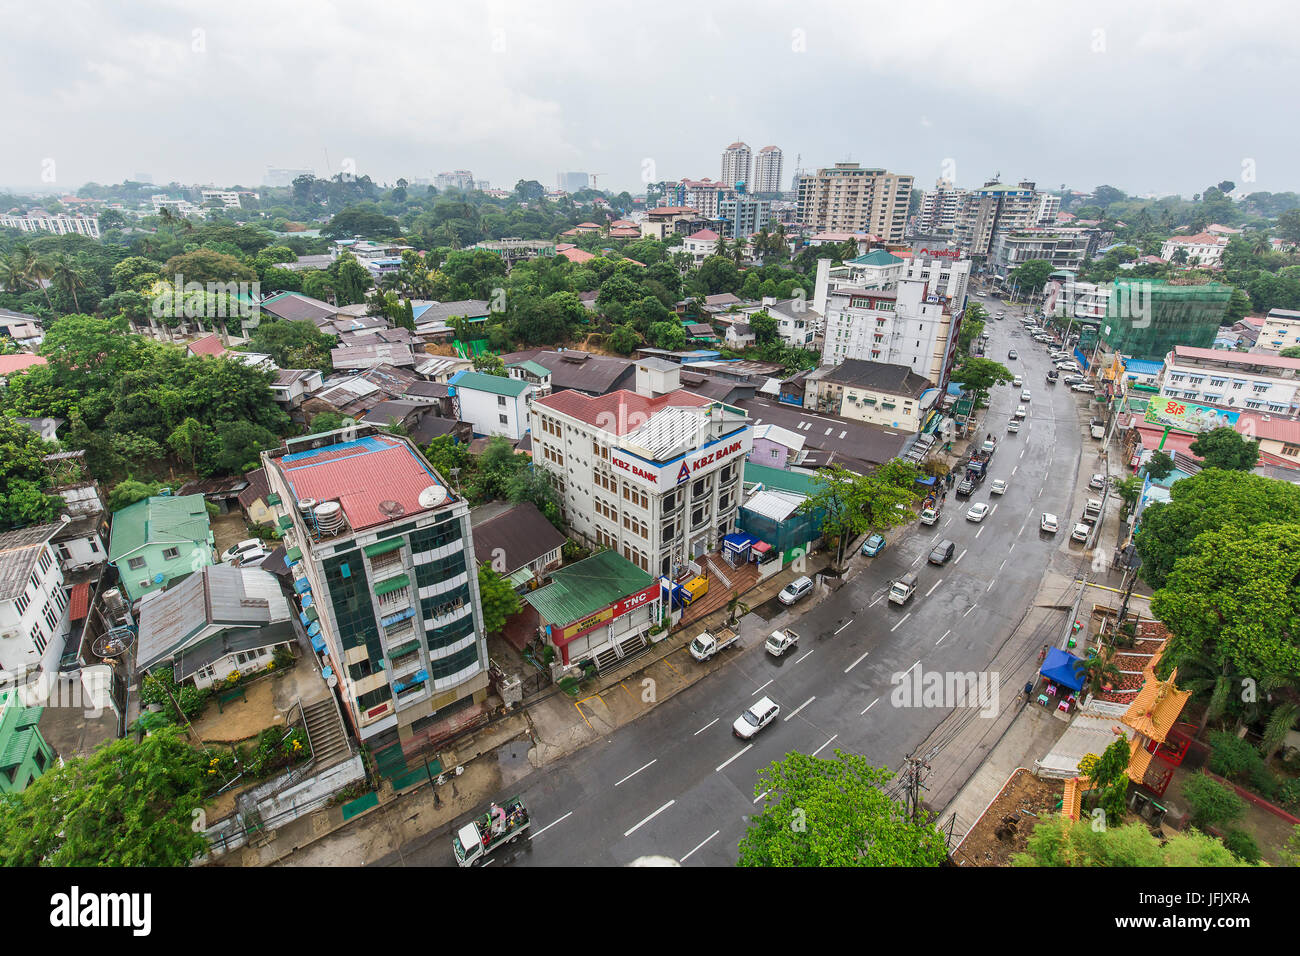 Yangon / Ragoon street view paisaje urbano de la ciudad de El Alto - Resumen - lugar para visitar Myanmar/Birmania Foto de stock